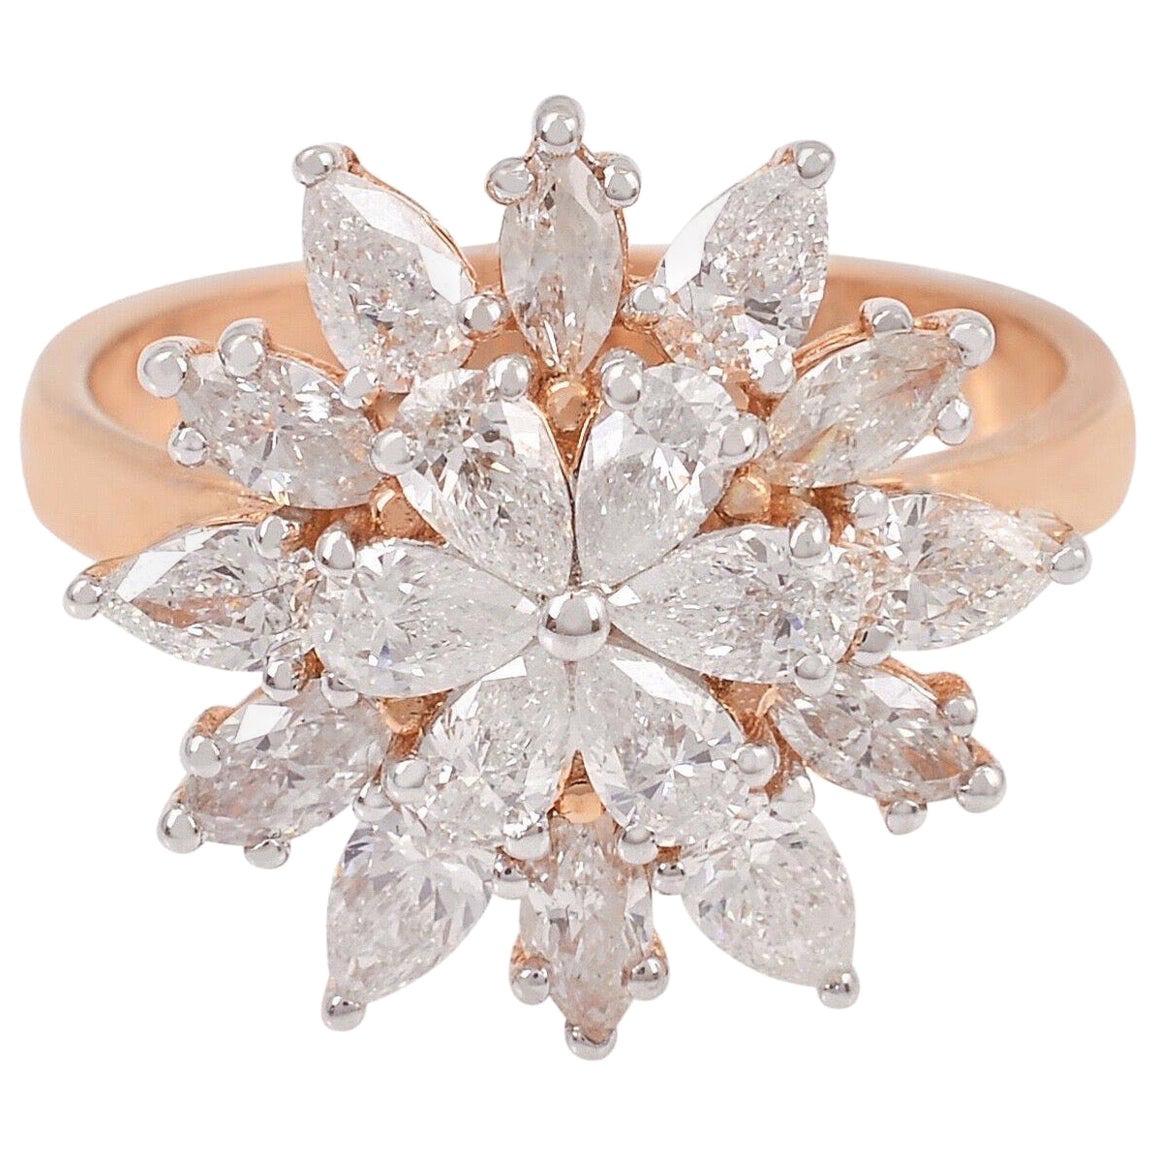 Floral Diamond 18 Karat Rose Gold Ring